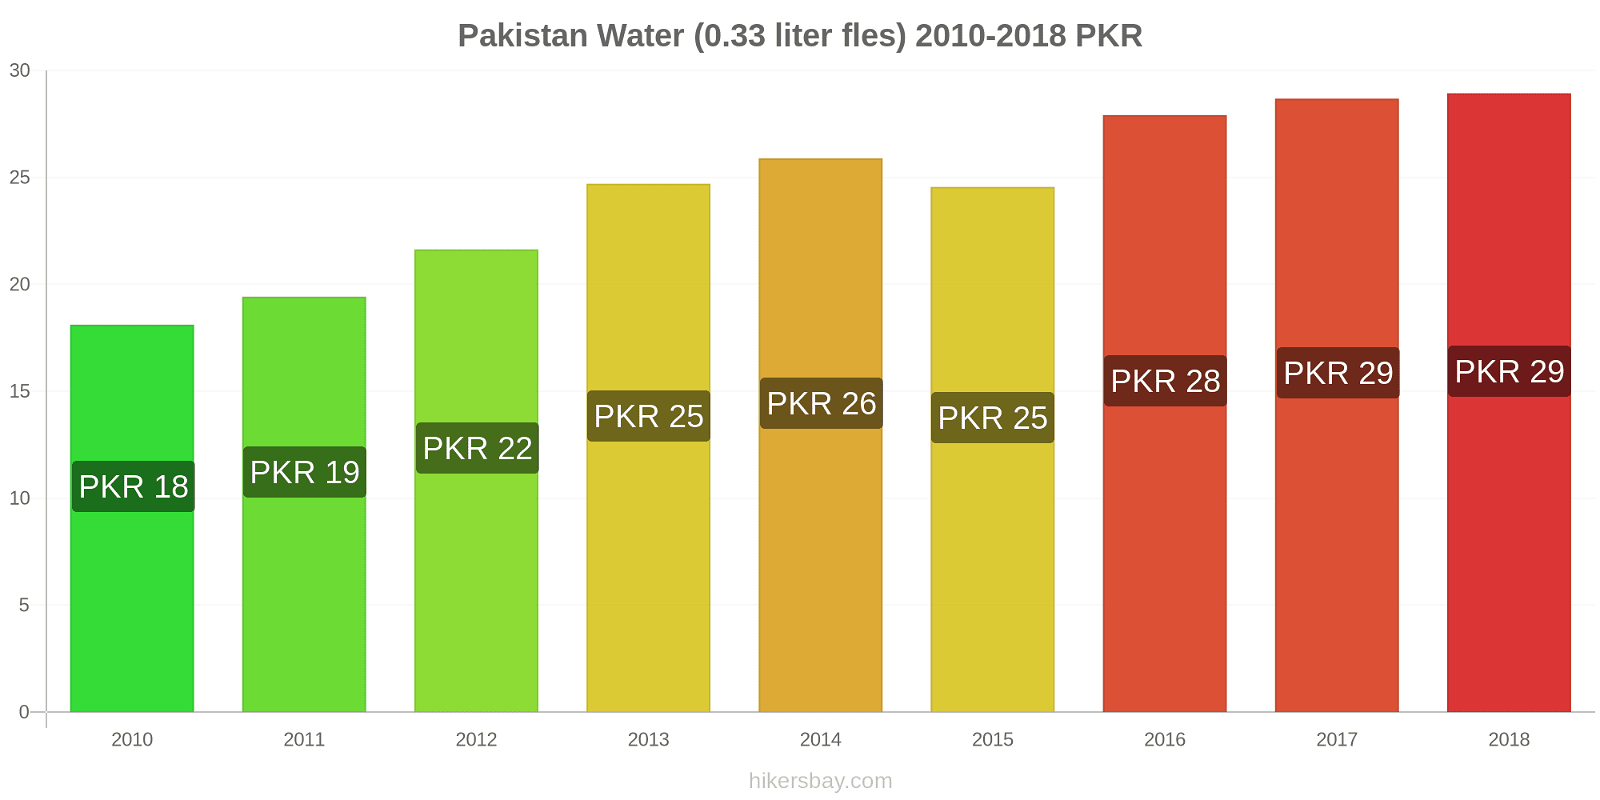 Pakistan prijswijzigingen Water (0.33 liter fles) hikersbay.com